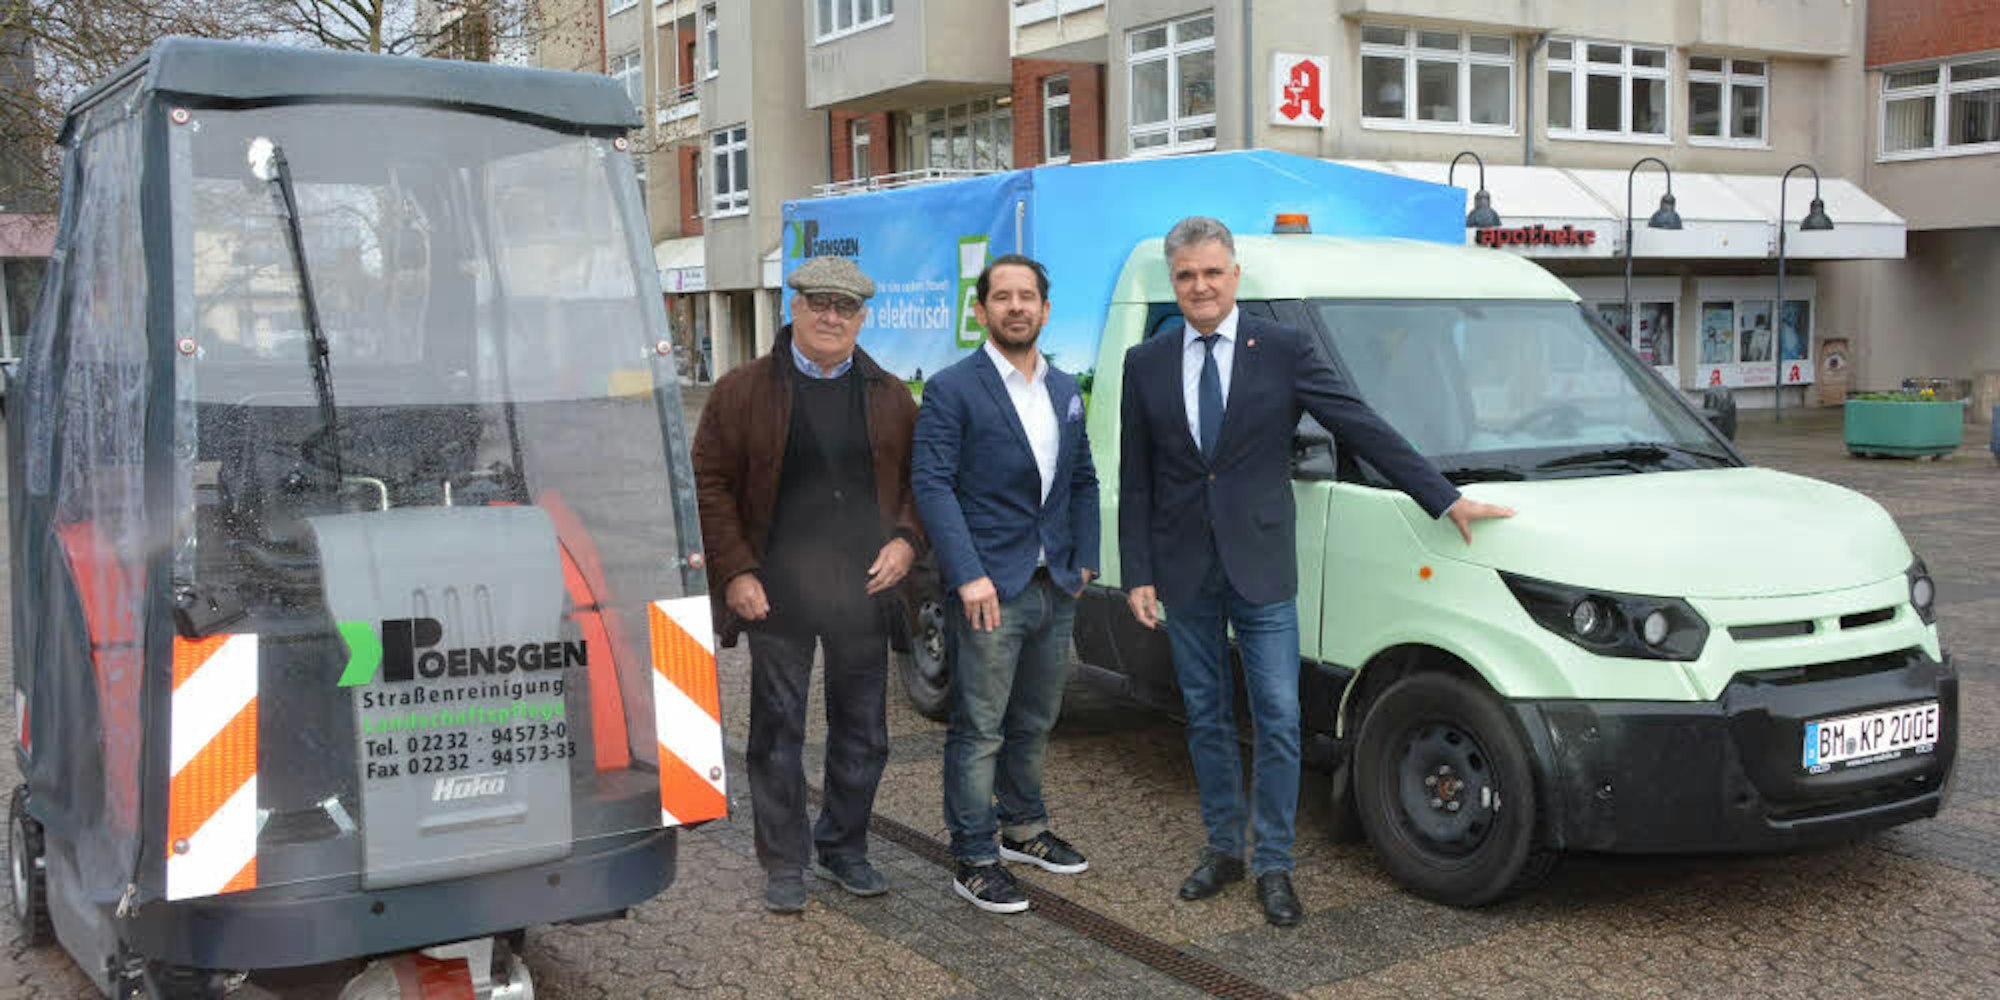 Hans-Paul und Christian Poensgen und Bürgermeister Esser (v.l.) mit der Kehrmaschine und dem Street Scooter.